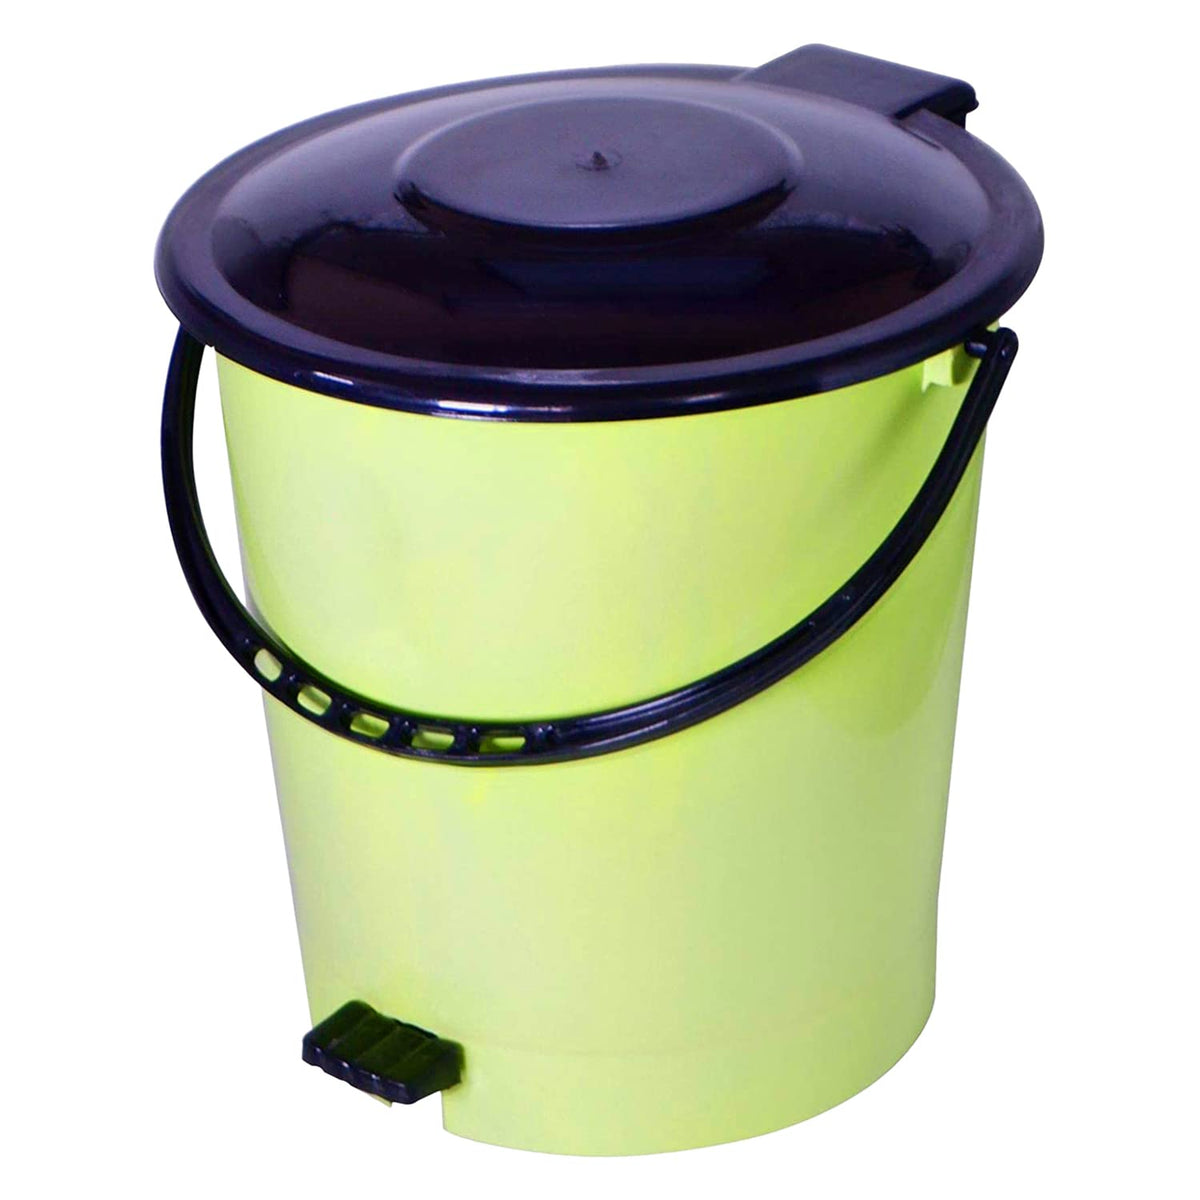 Kuber Industries Pedal Dustbin|Plastic Pedal Dustbin|Kitchen Waste Paper Bin|Dustbin For Bedroom|5 Liter Dustbin (Green)